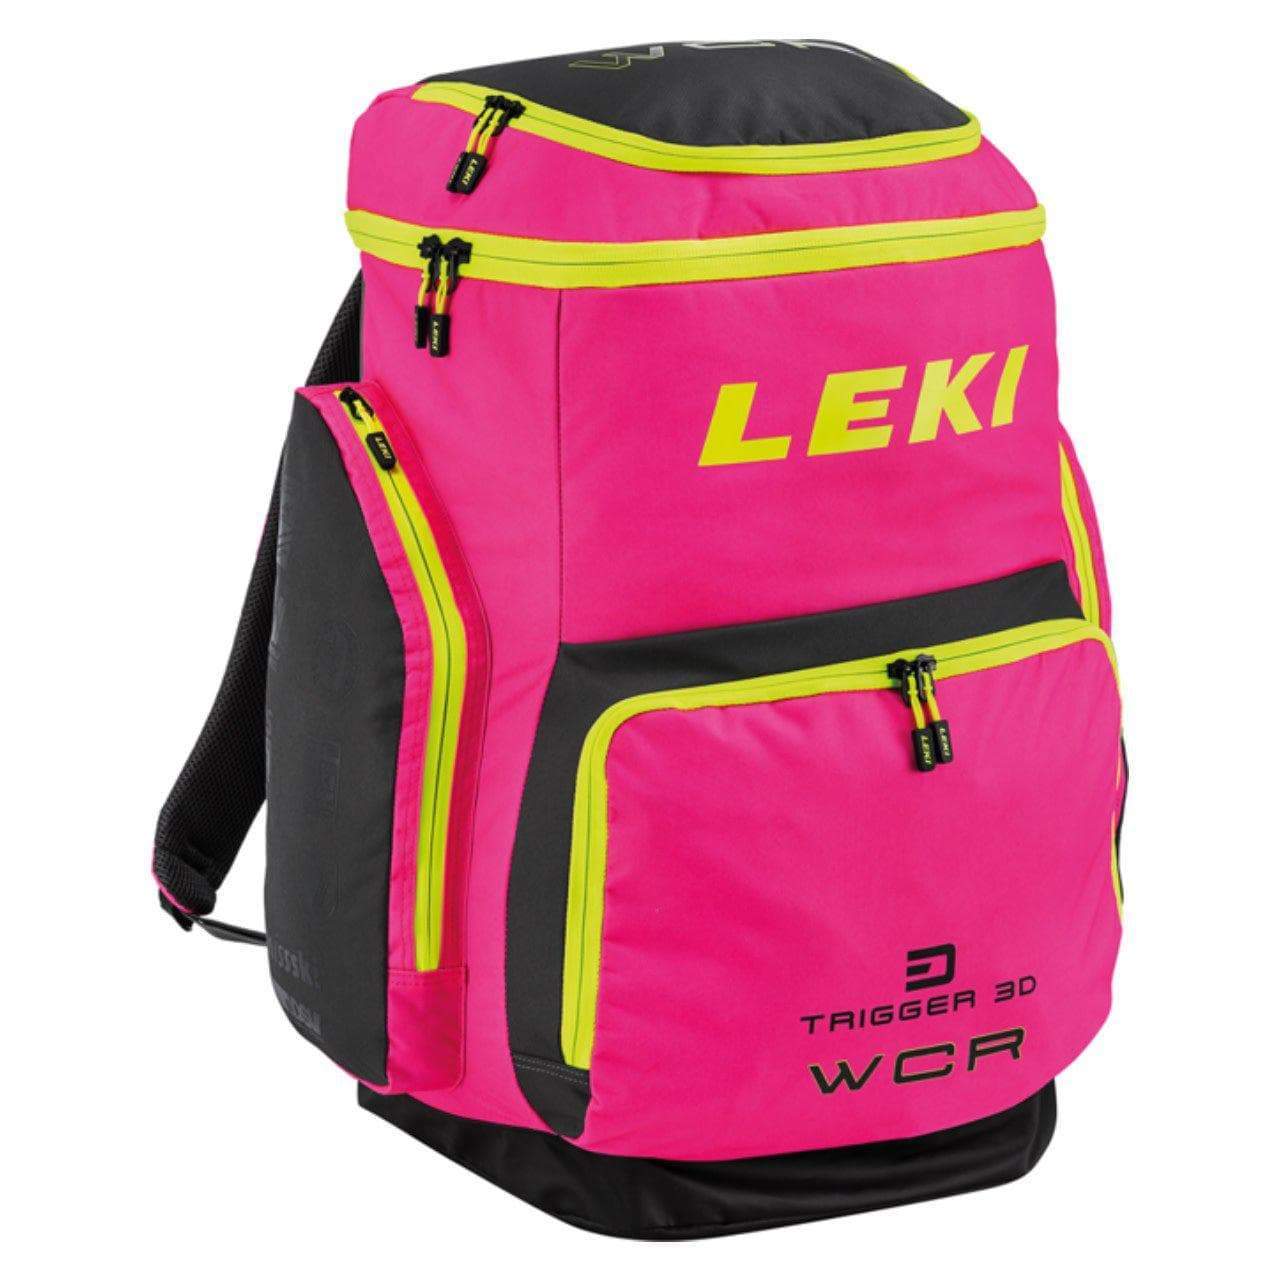 Leki Ski Boot WCR Bag